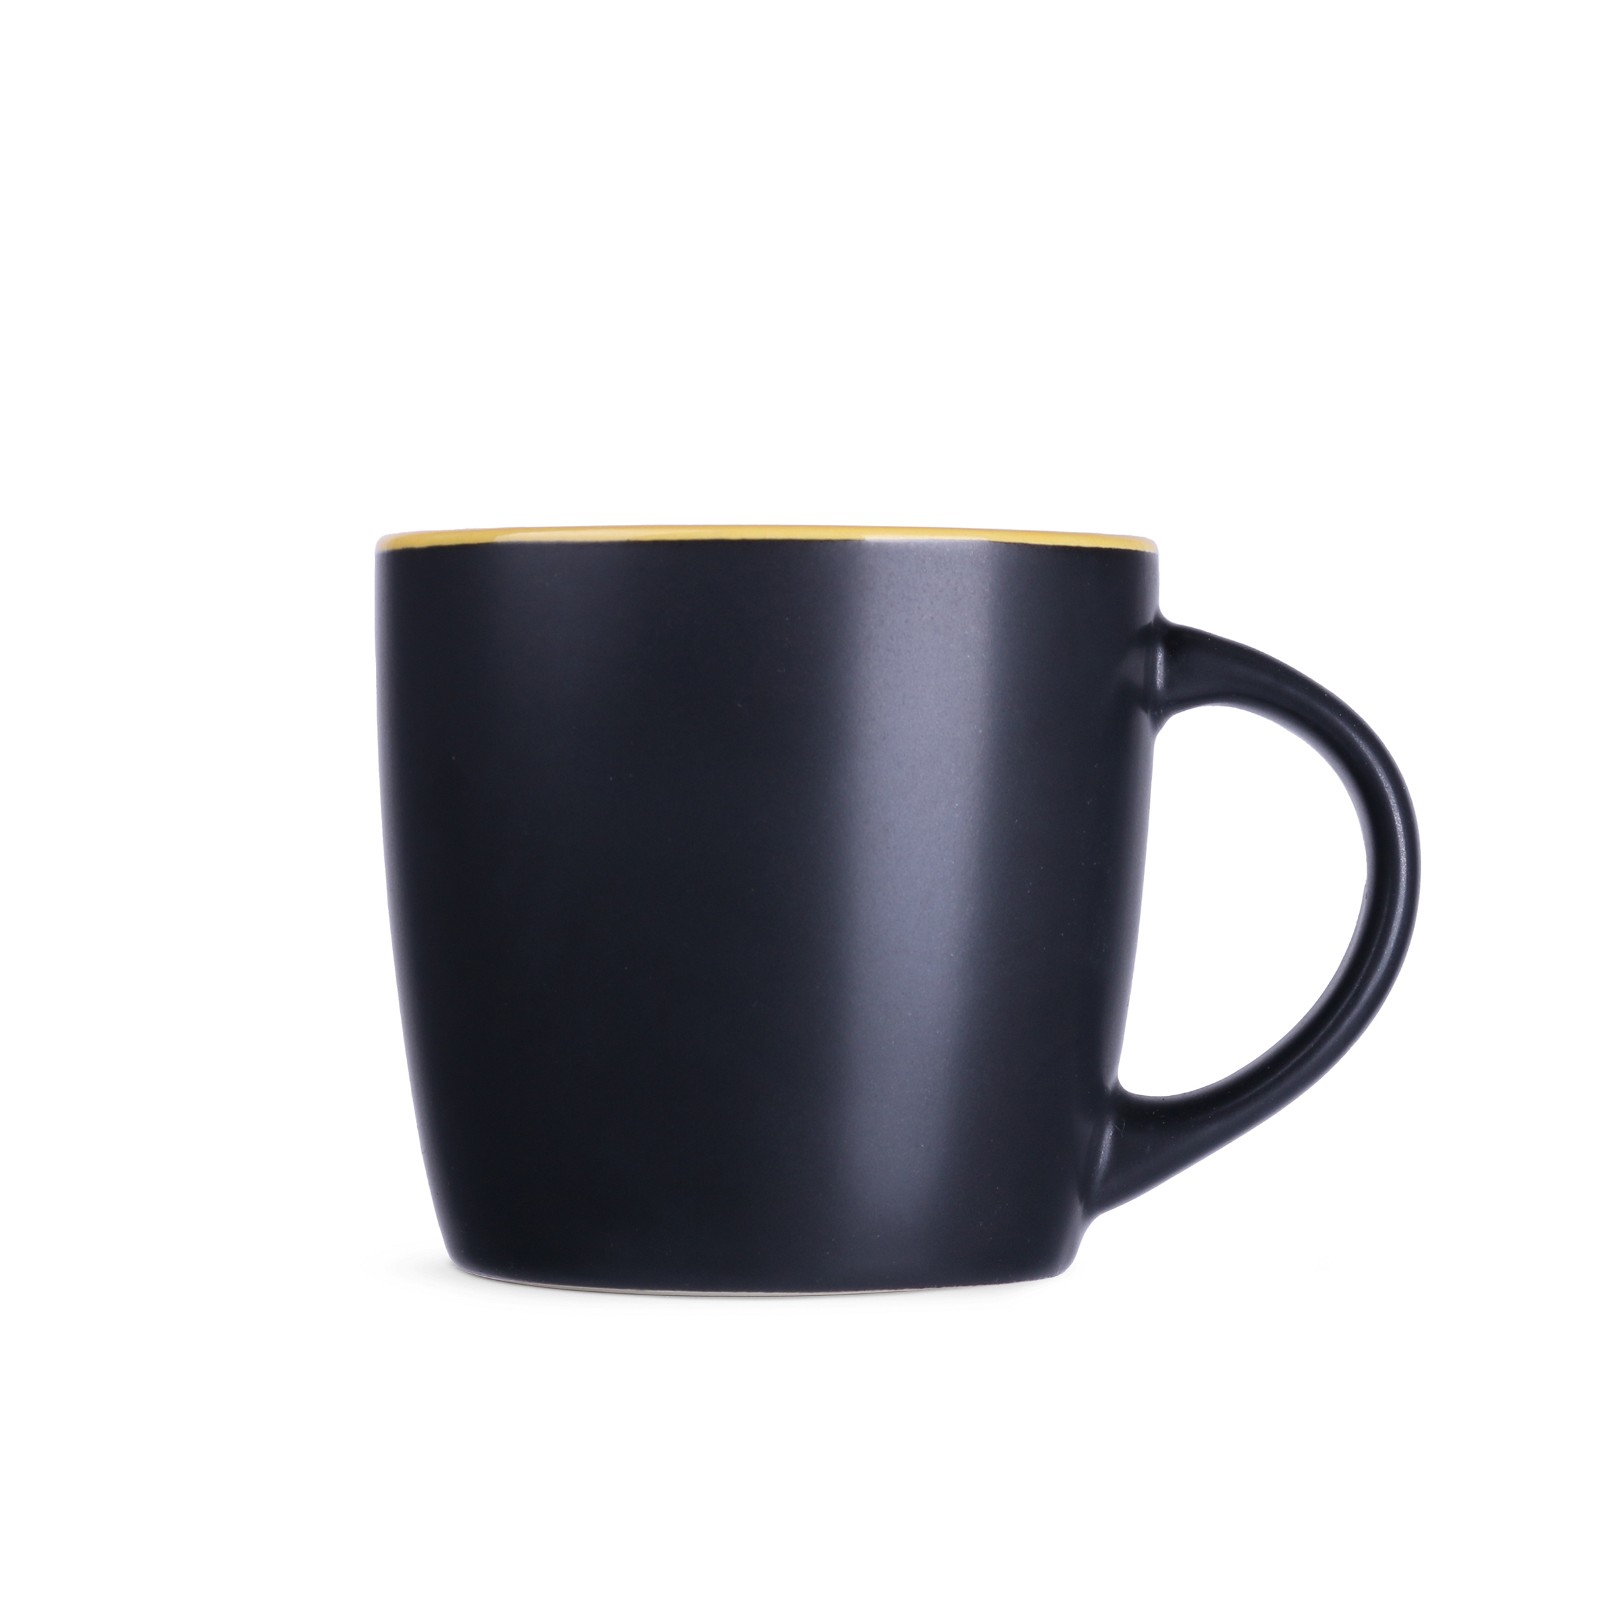 mug handy supreme 300ml with logo